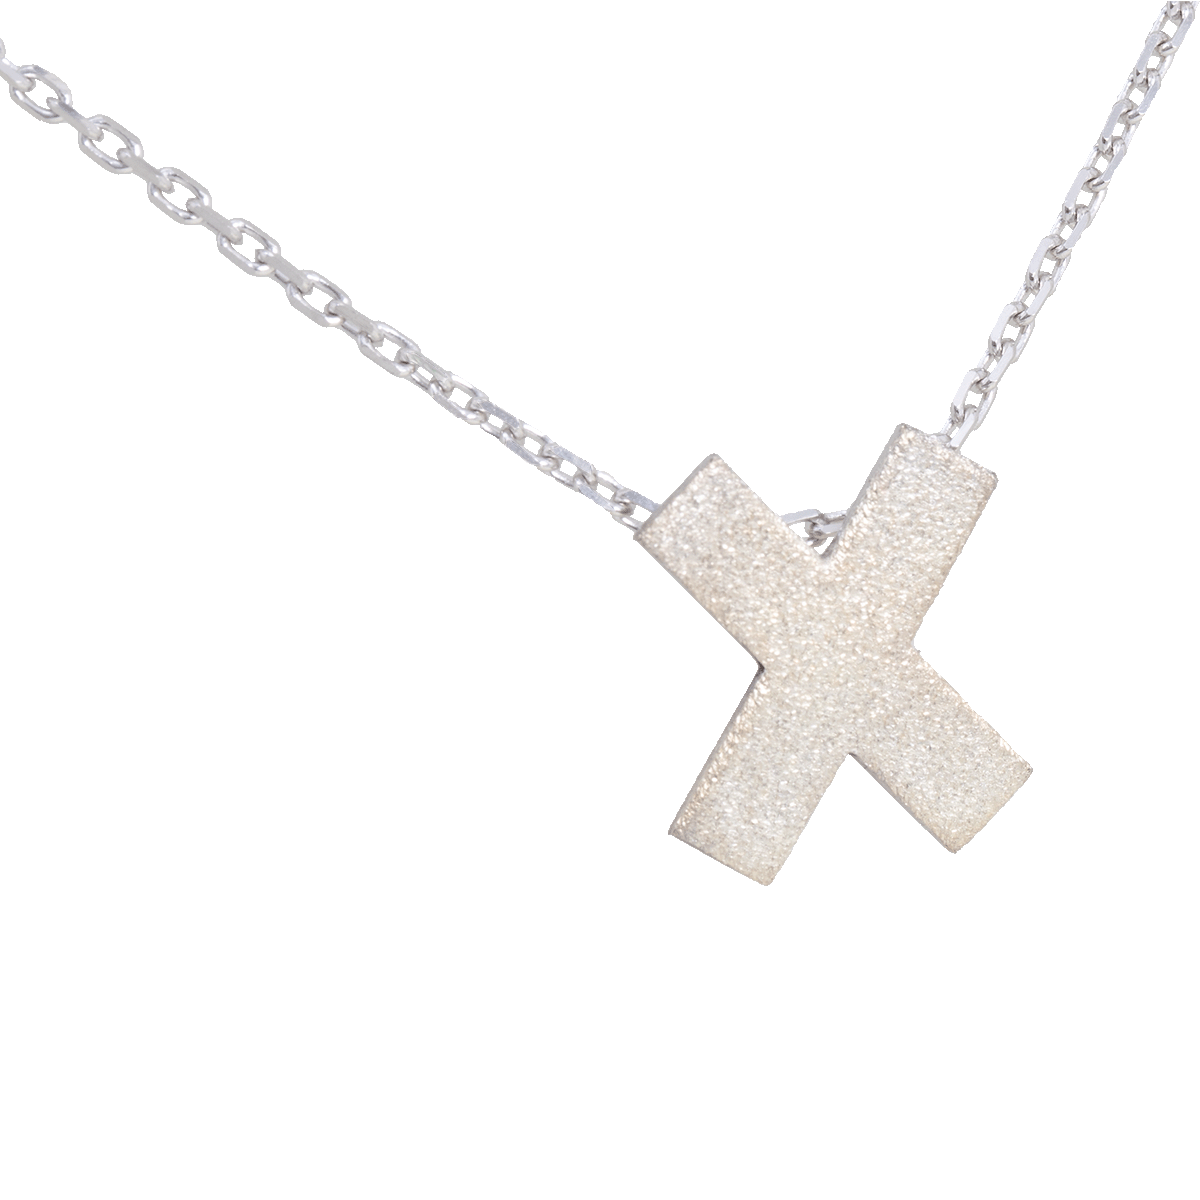 St. Andrew's cross pendant